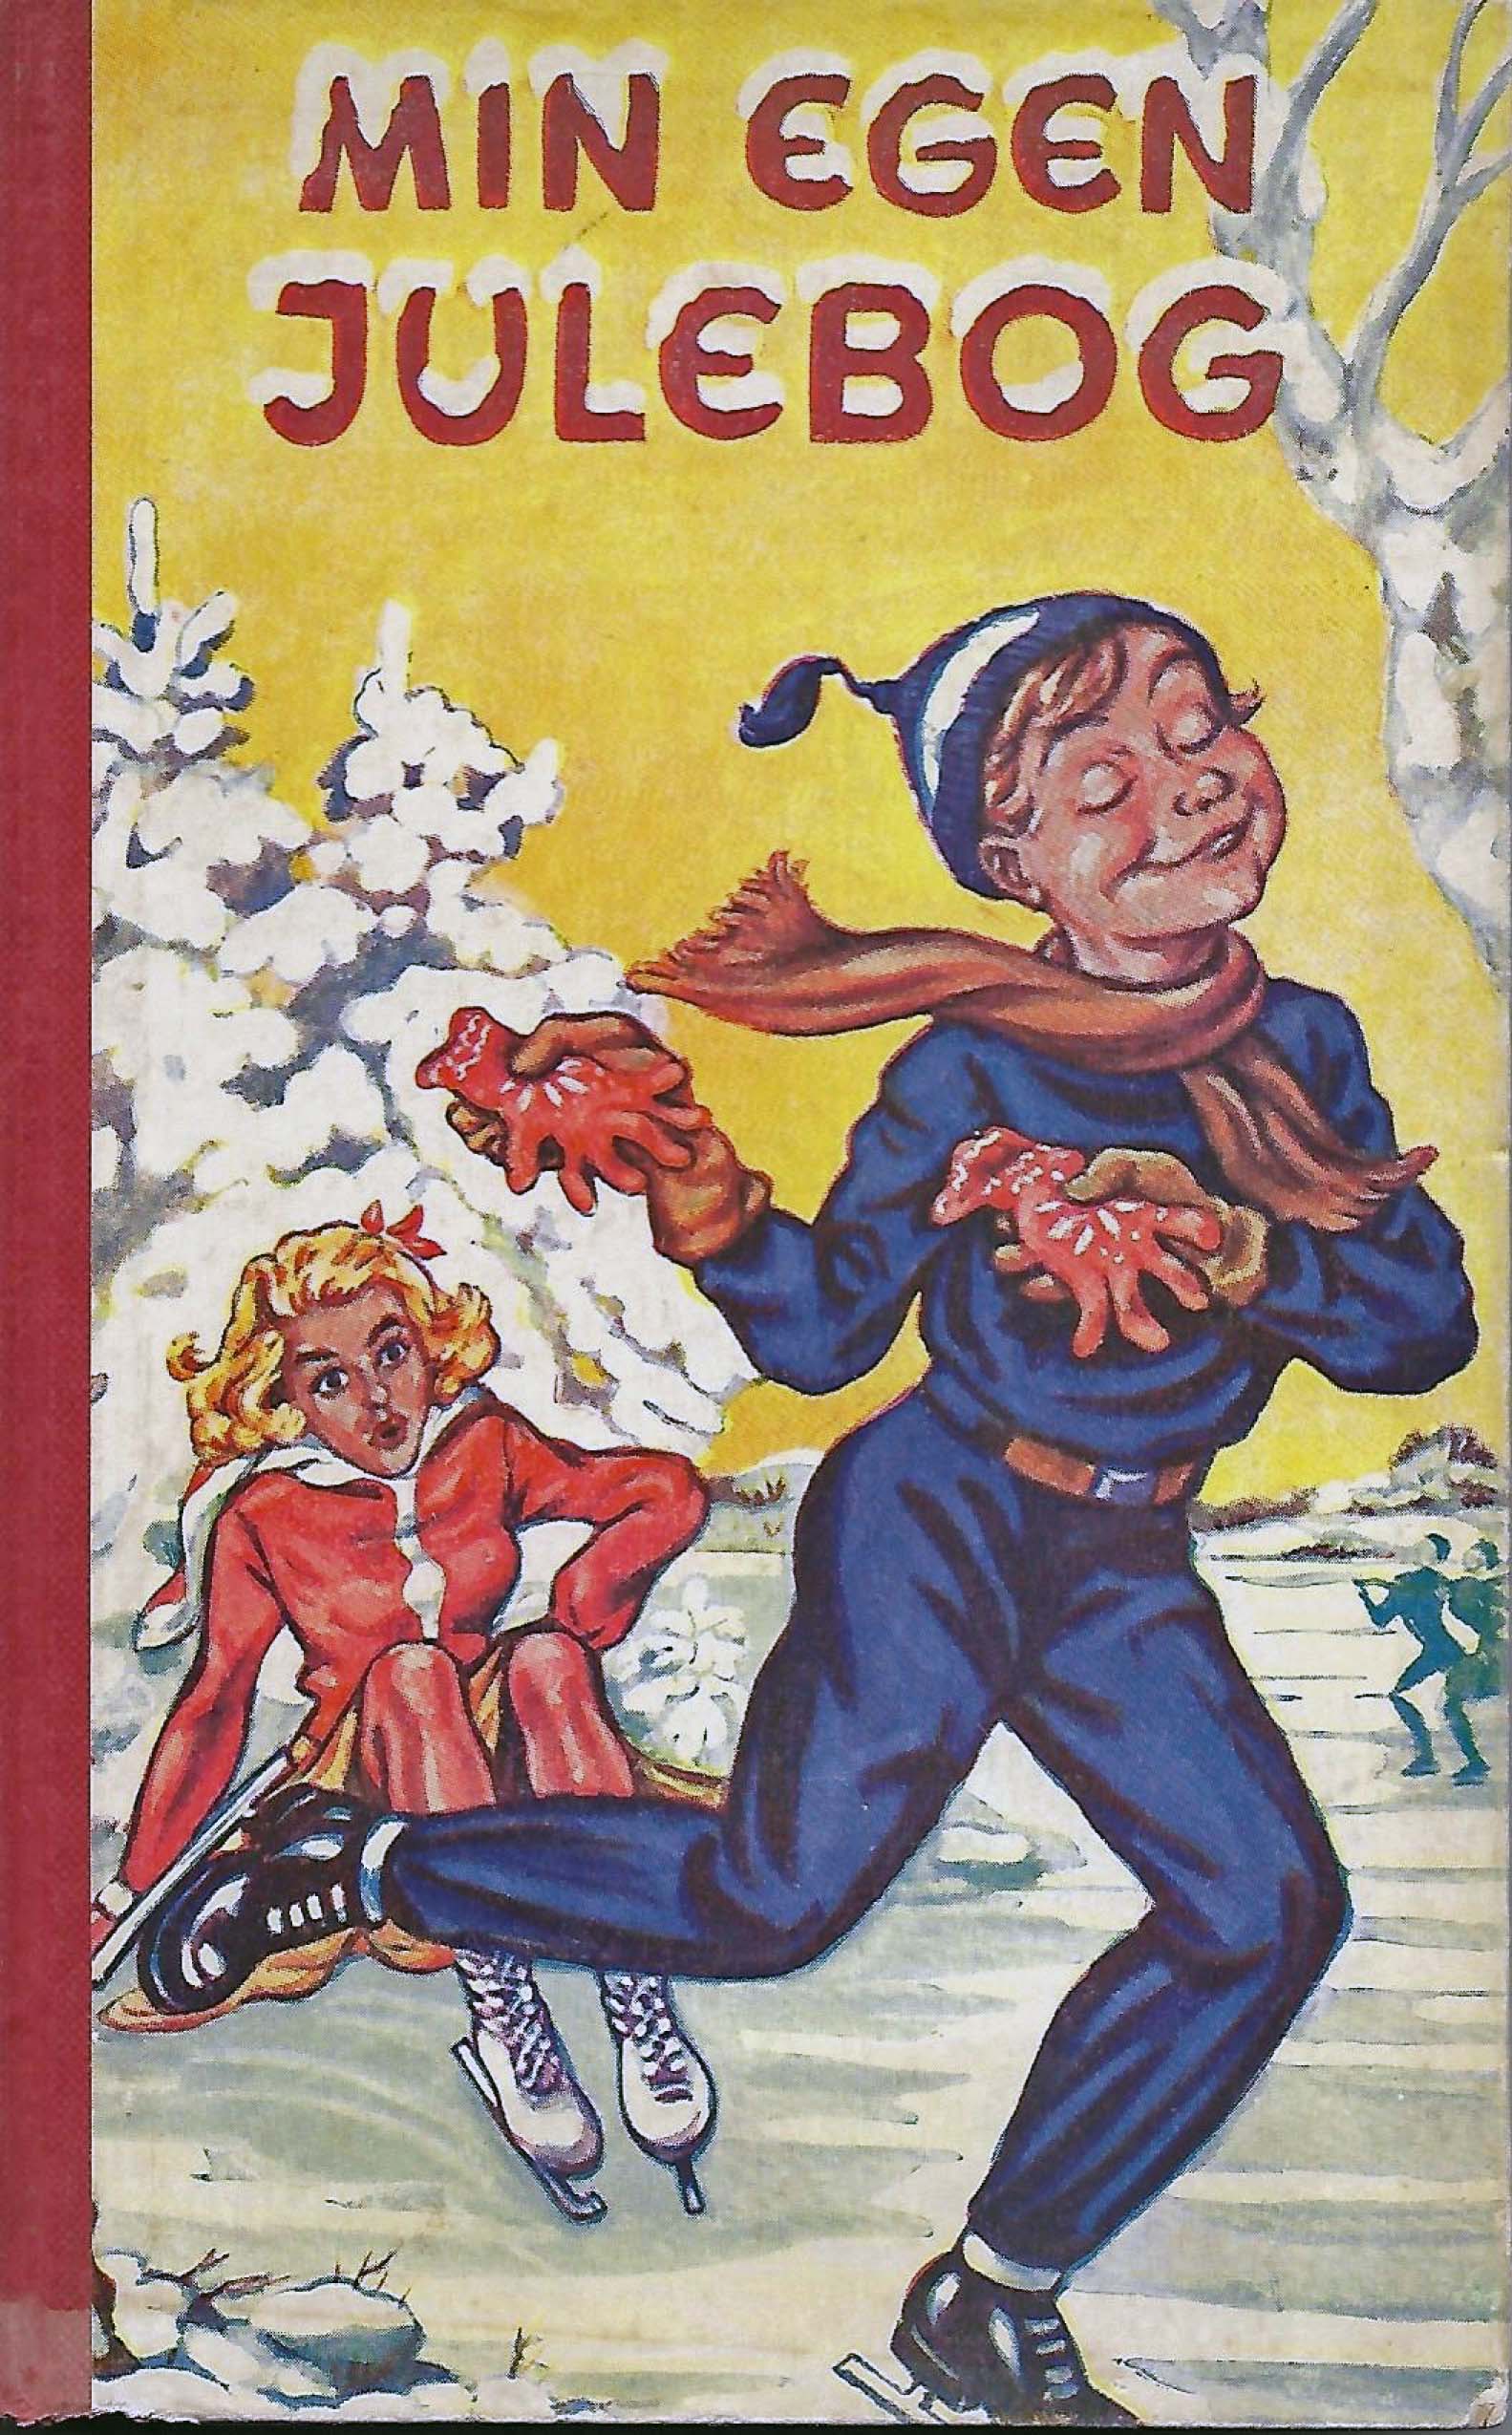 1956 Min egen Julebog